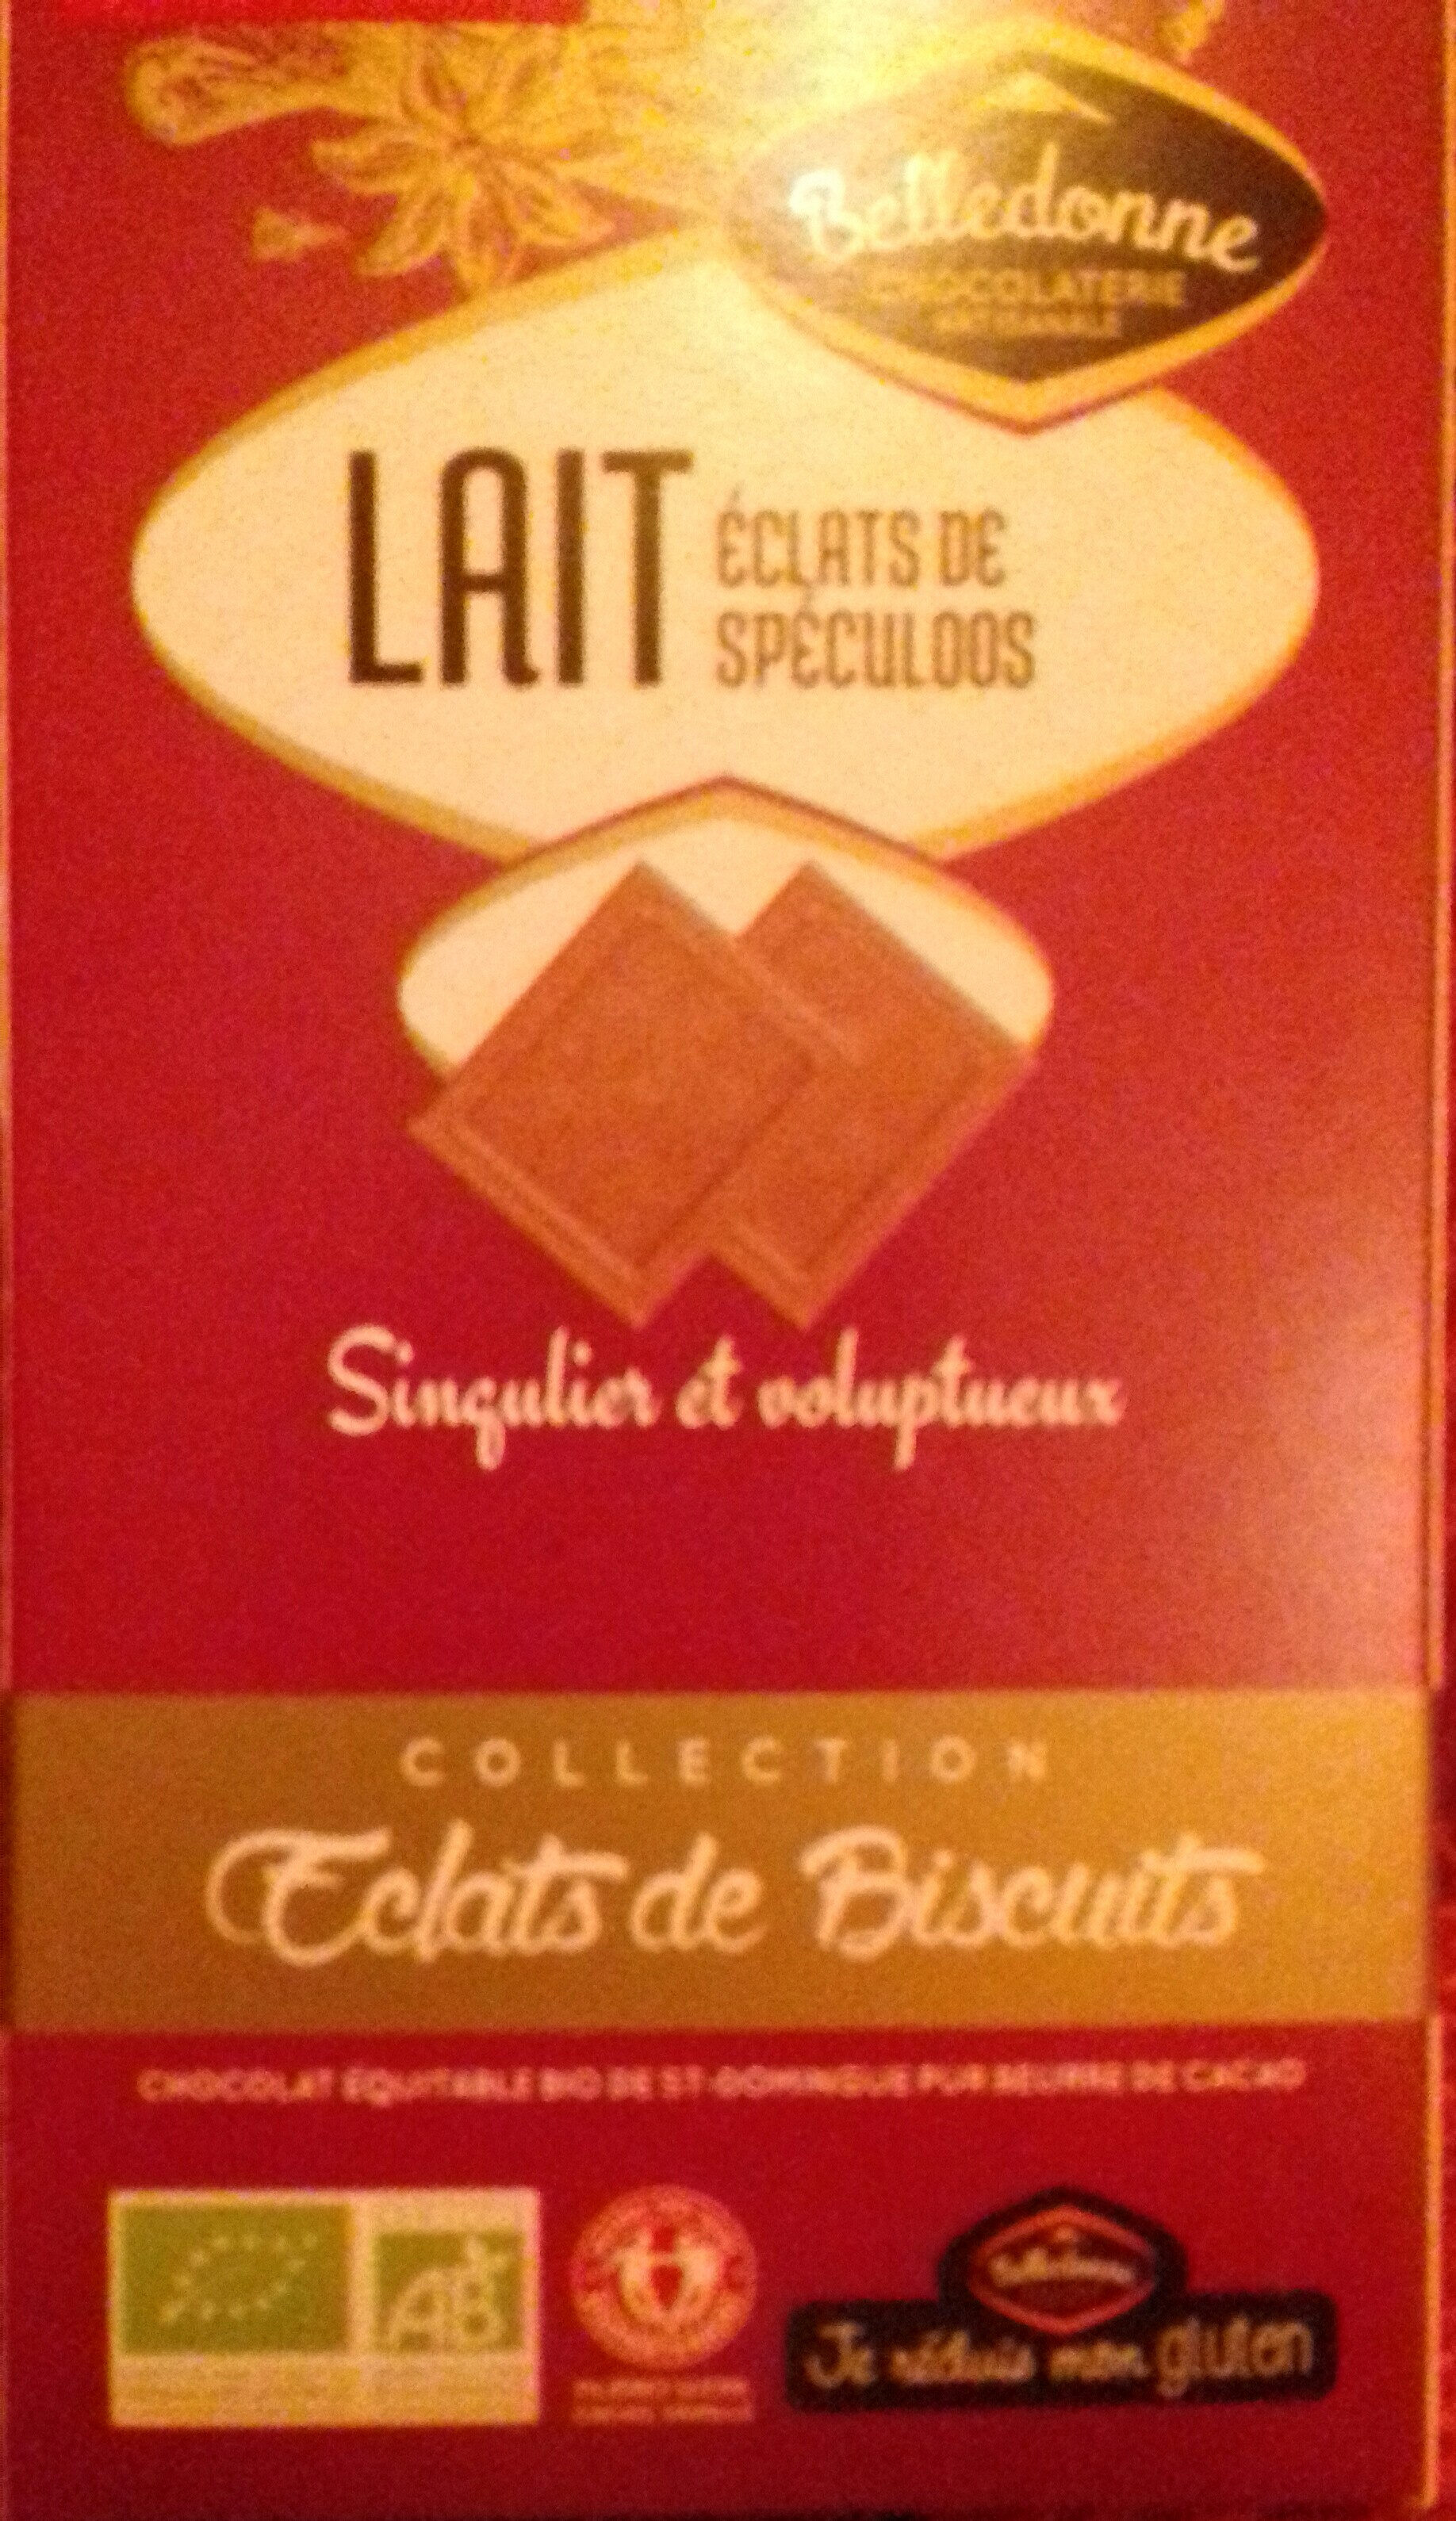 Chocolat lait éclats de biscuits spéculoos - Produkt - fr